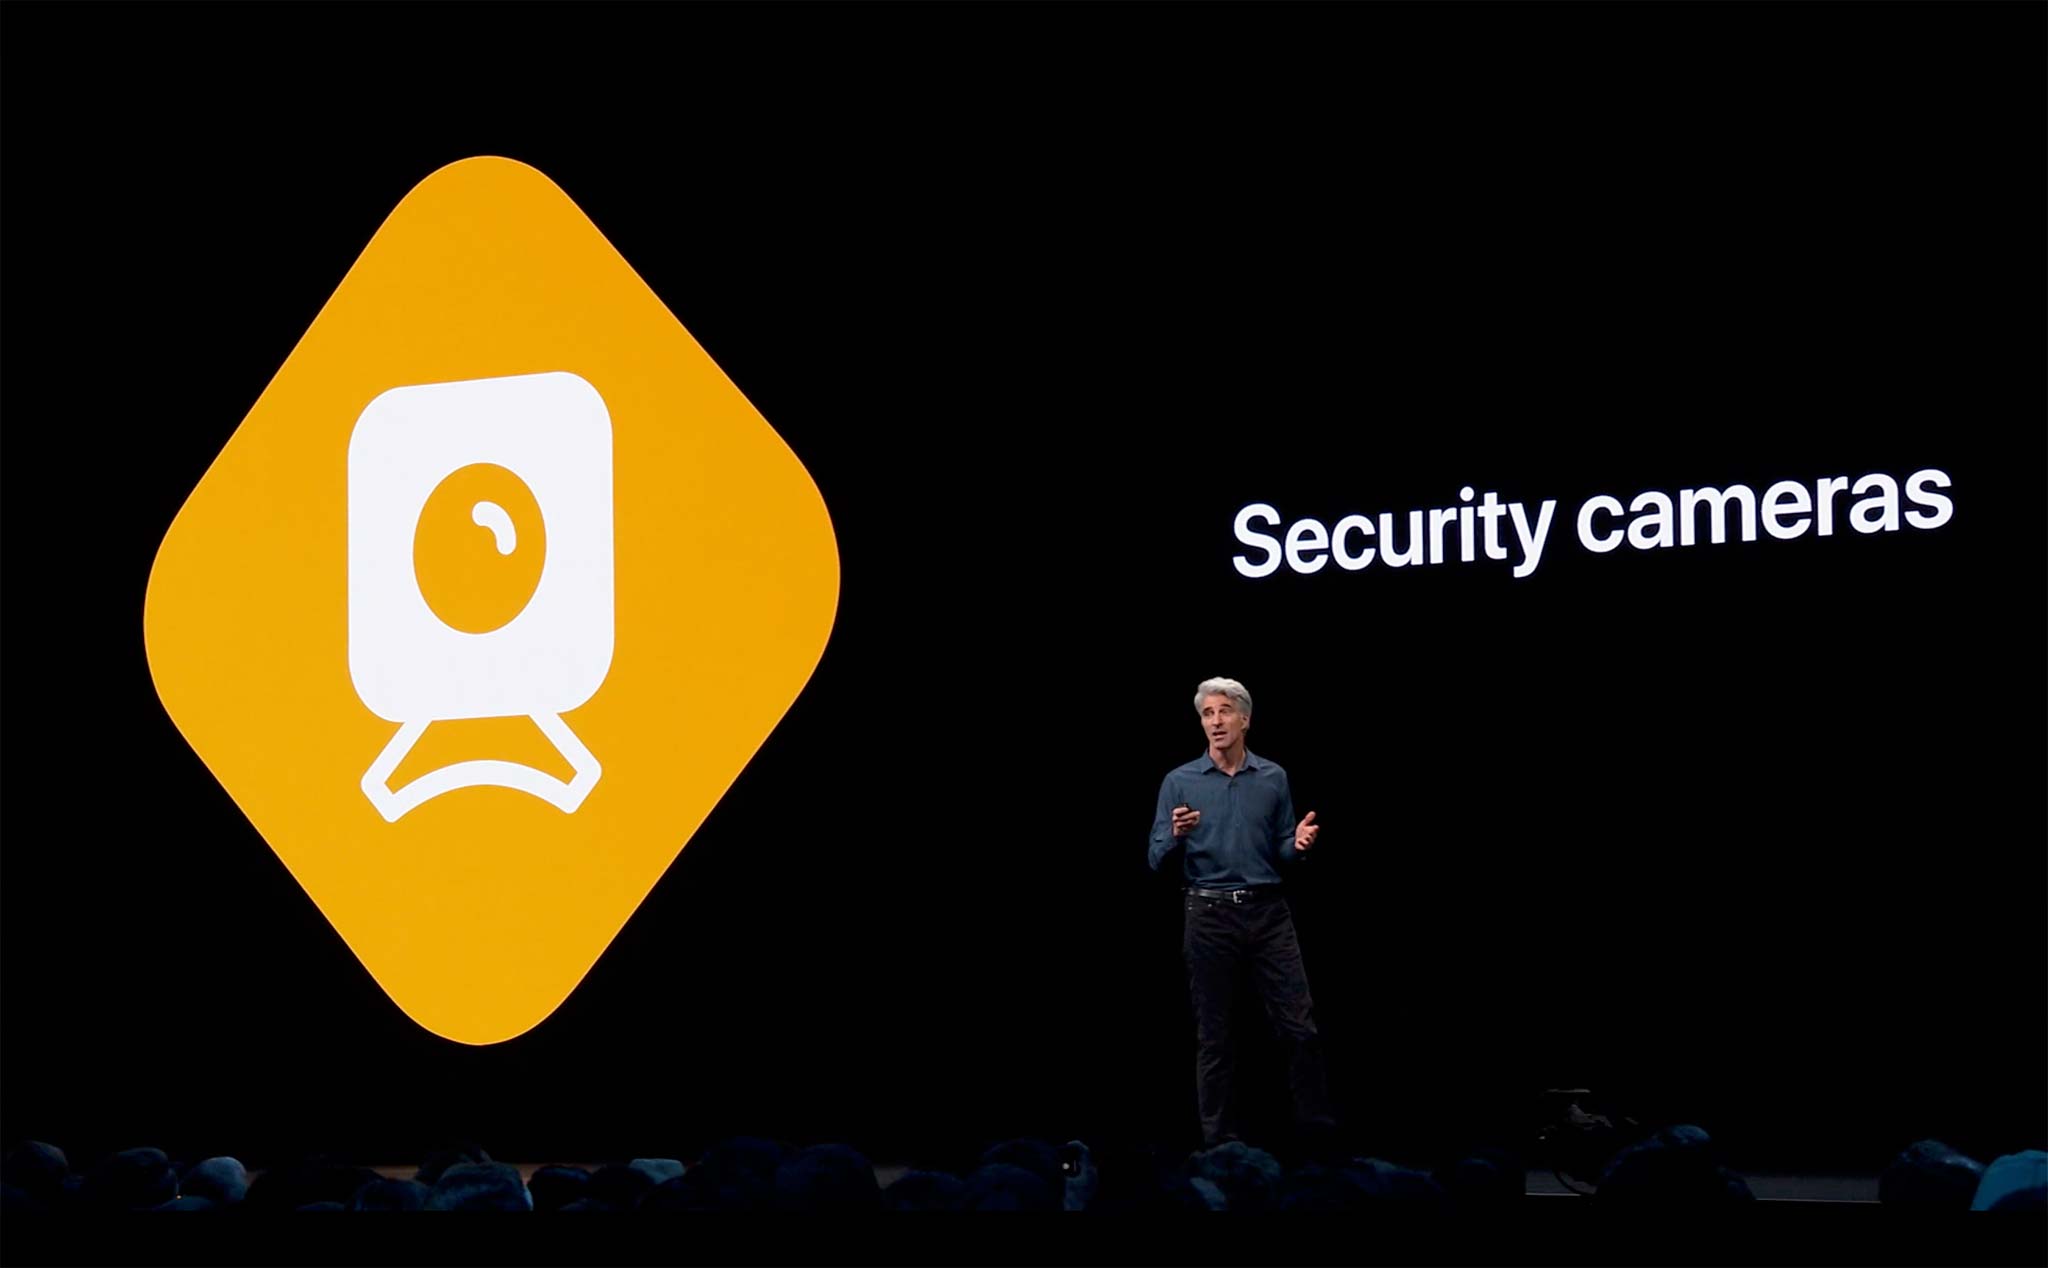 HomeKit trên iOS 13: tăng cường bảo mật cho camera, router